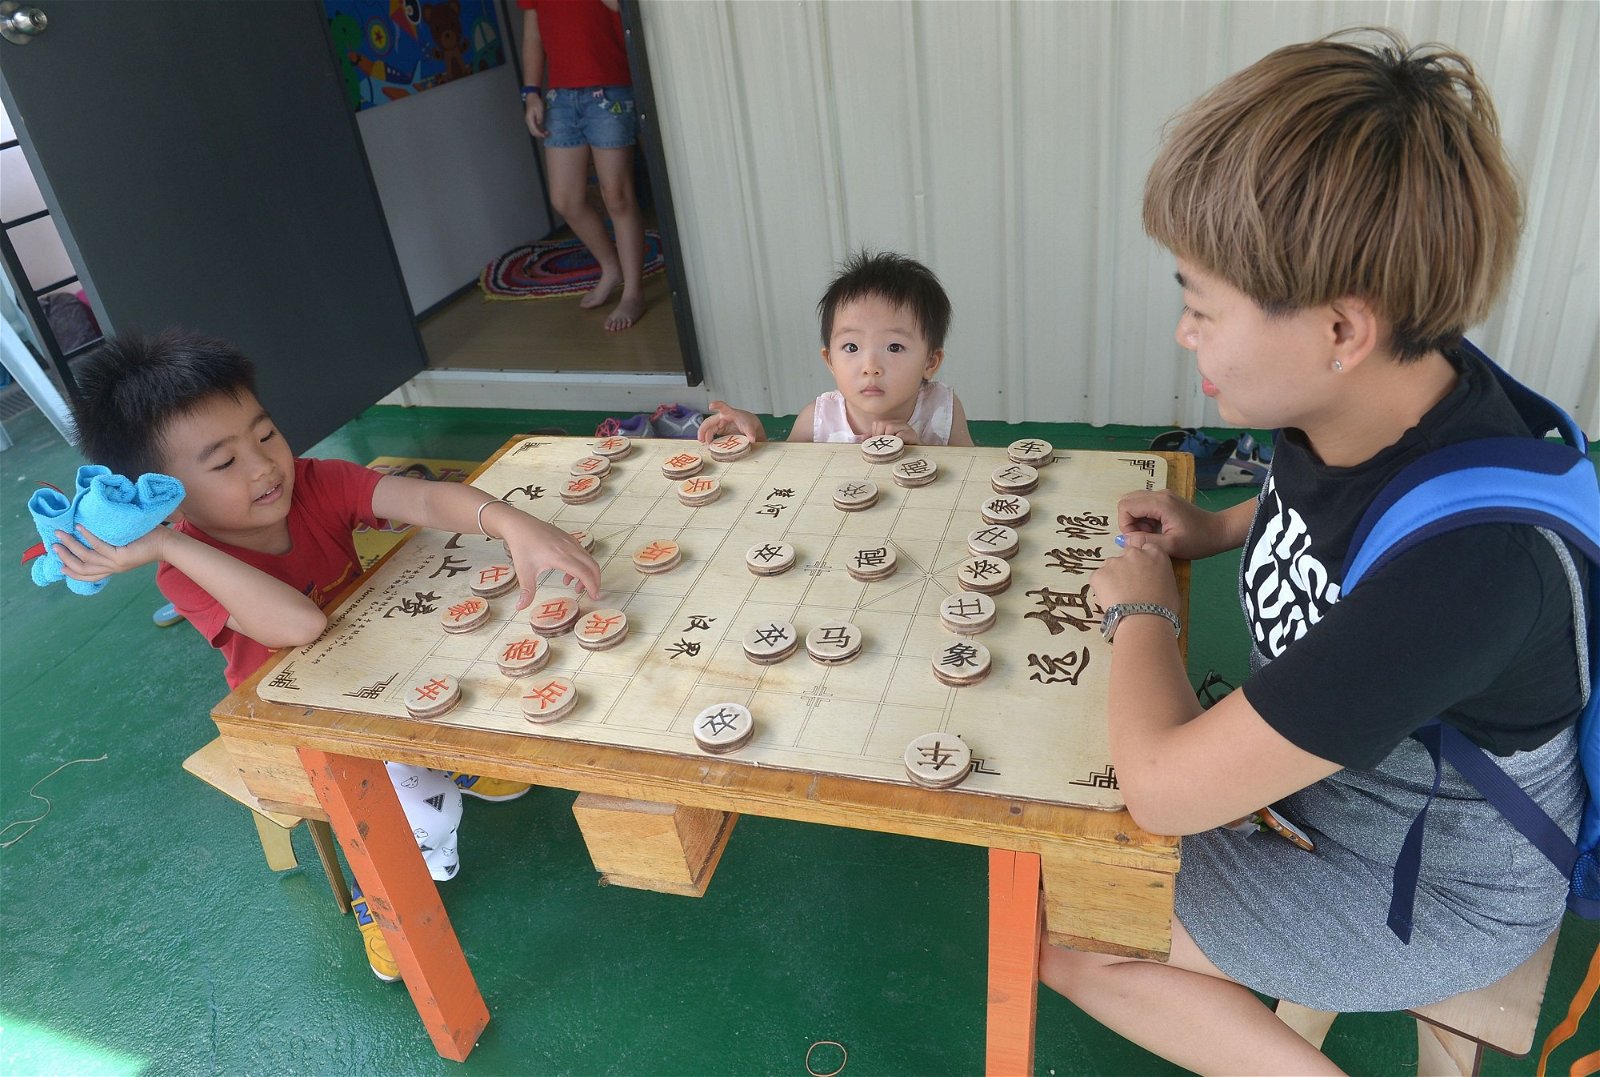 这里有特制的中国象棋等其他的桌游，供孩子及家长玩乐；若孩子在一旁阅读或于其他小孩玩玩具时，家长也可对弈棋艺，各自找寻欢乐。